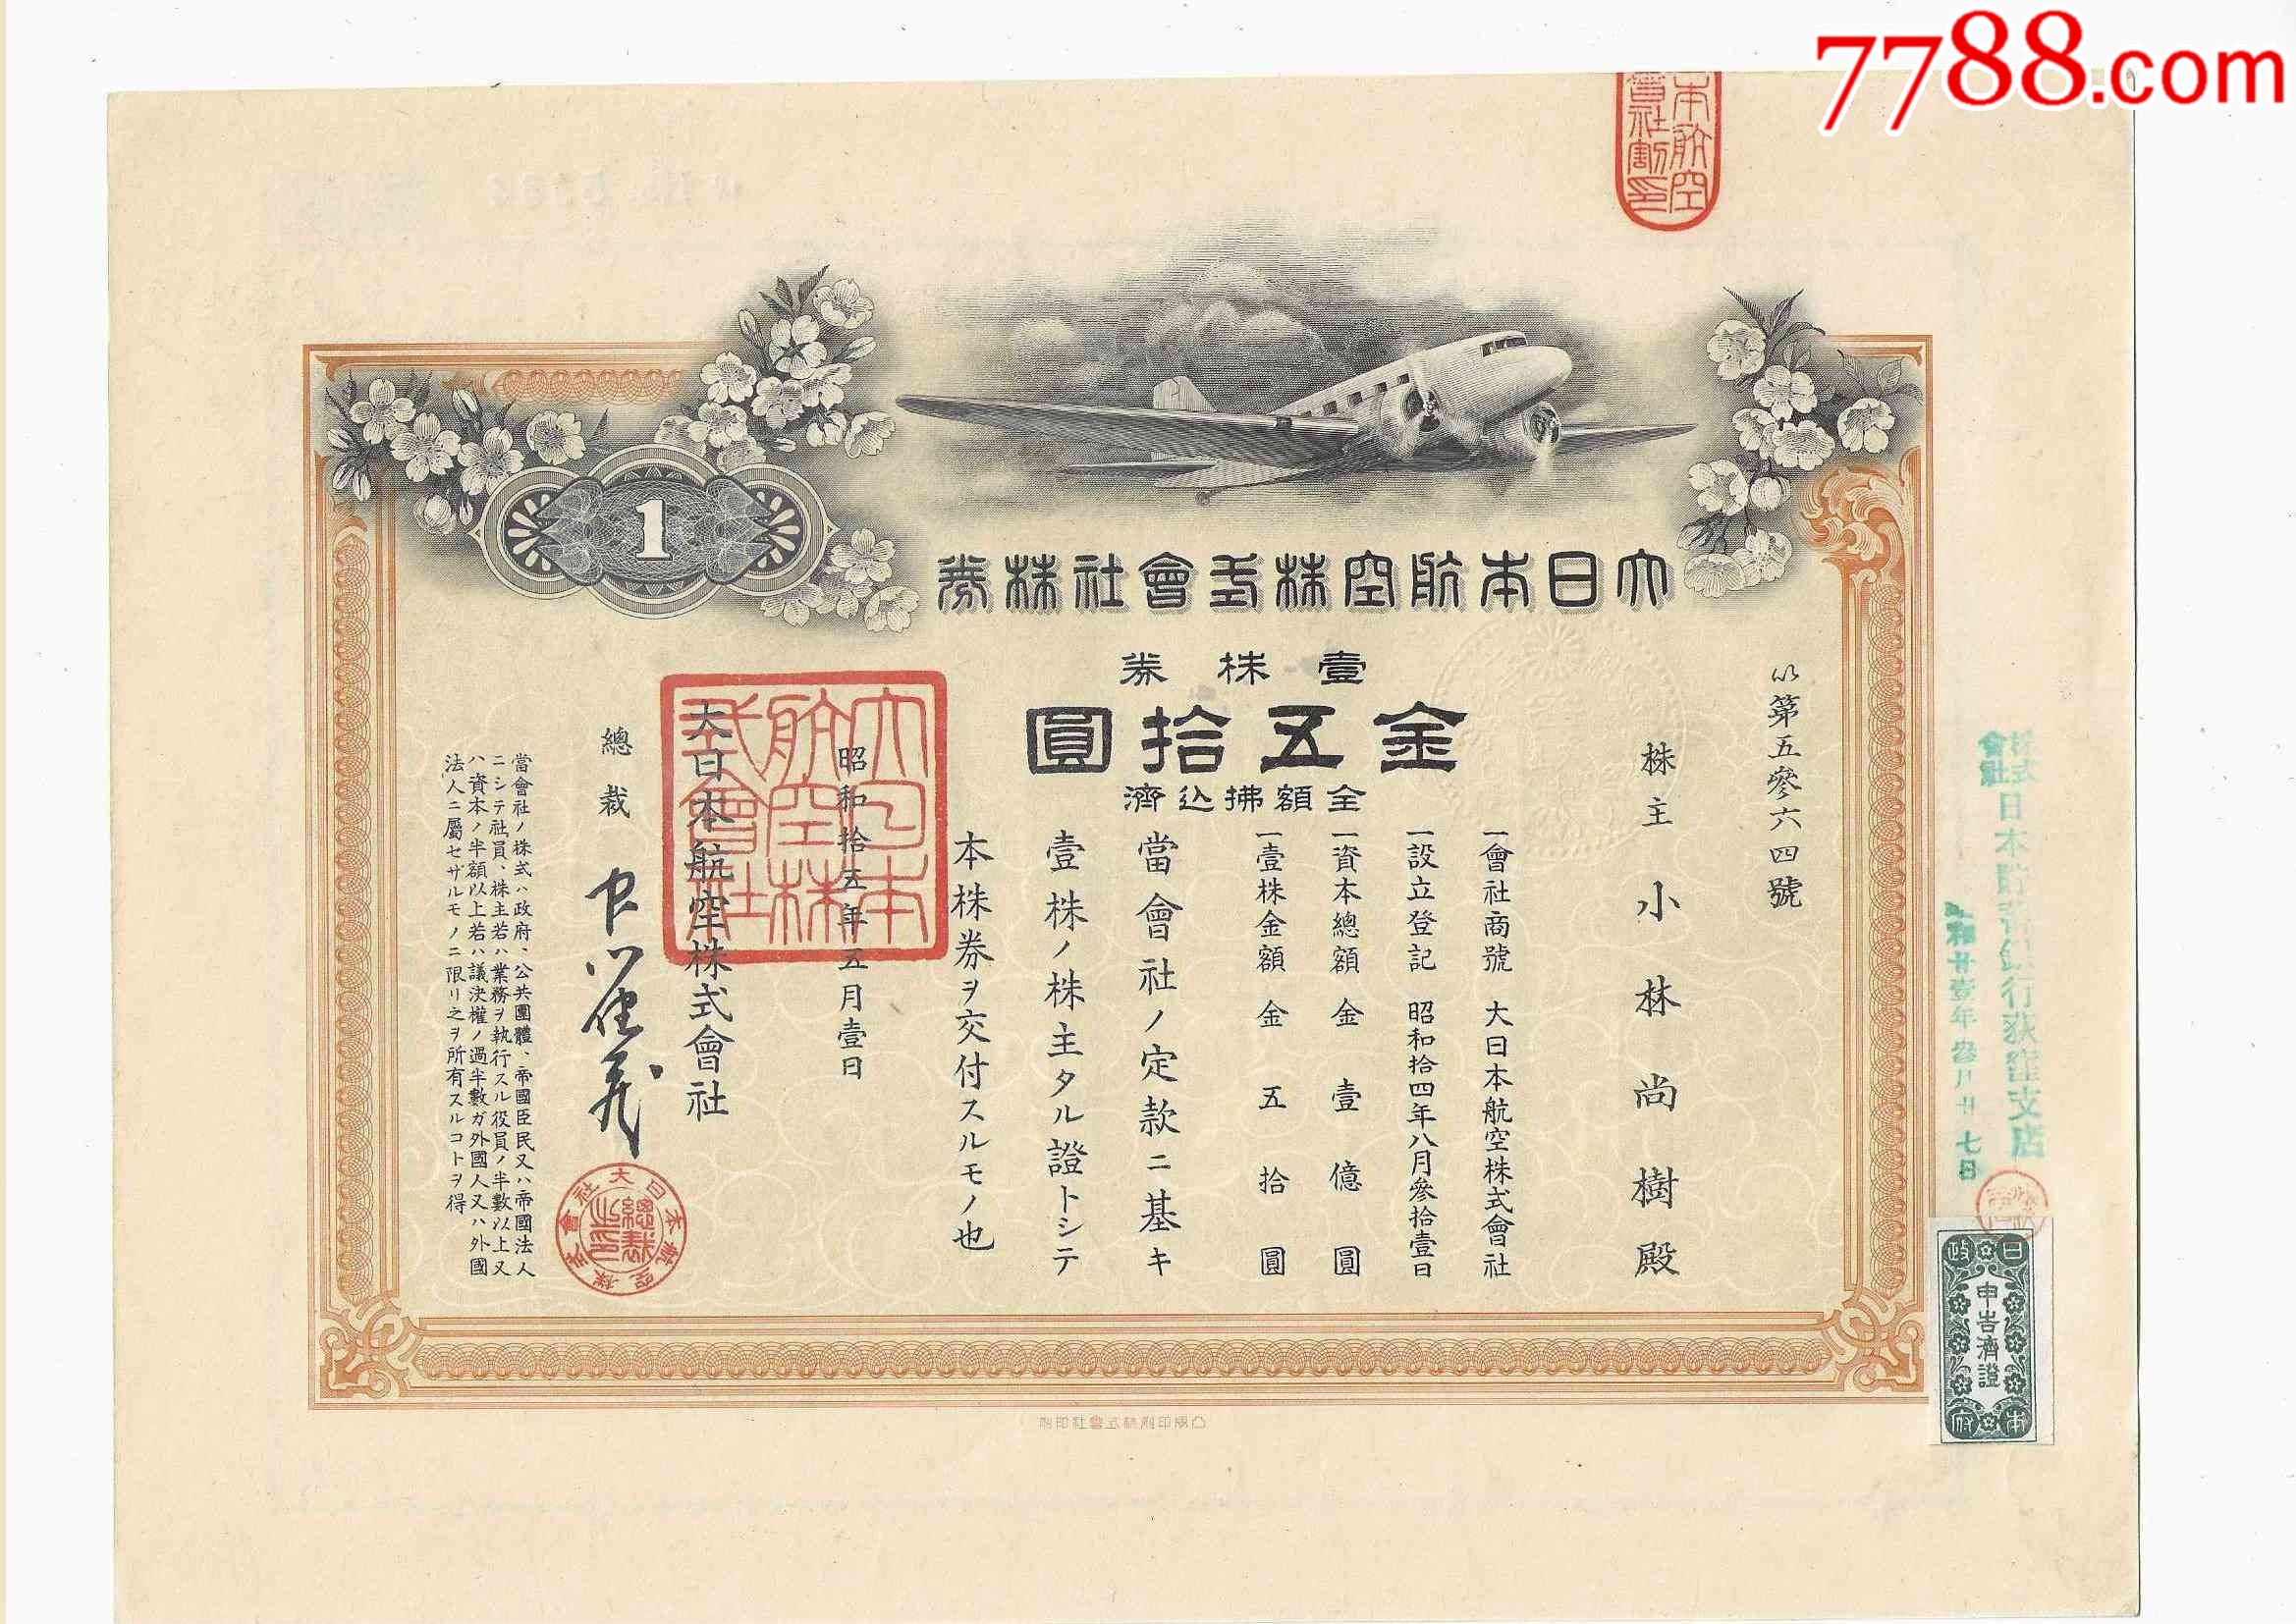 民国时期日本老股票债券大日本航空株式会社株券金50元1940年